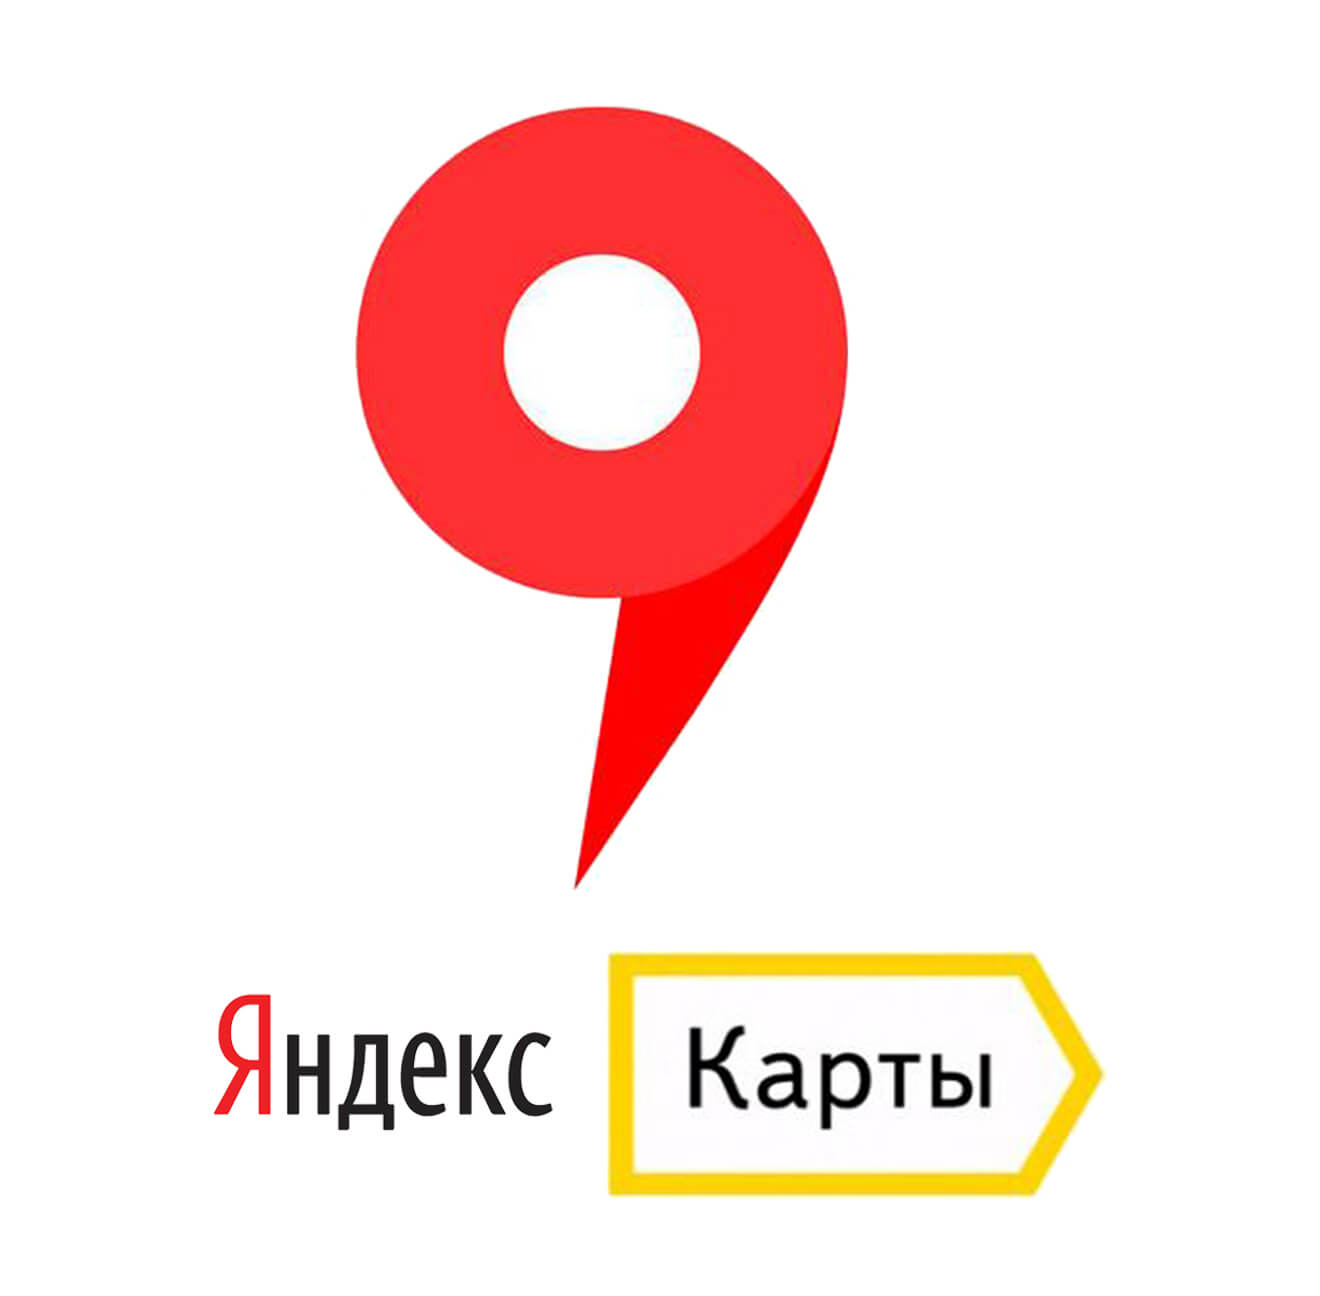 Отзывы на Яндекс.Картах